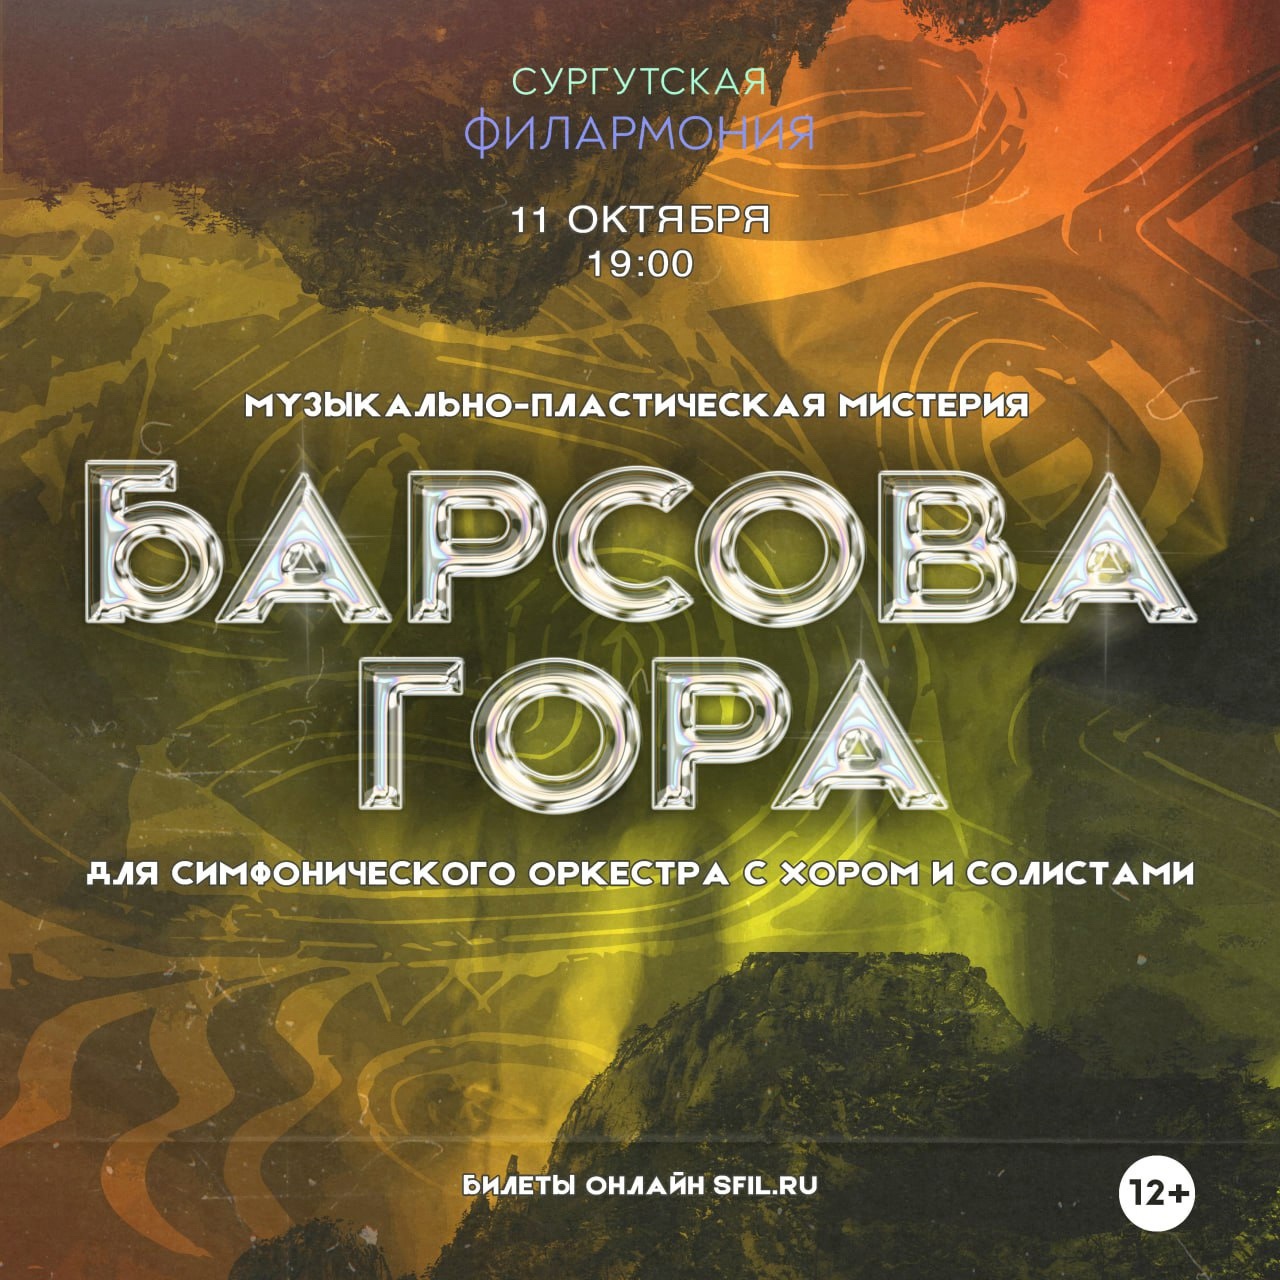 Премьера музыкально-пластической мистерии для симфонического оркестра с хором и солистами «Барсова гора» в Сургутской филармонии.